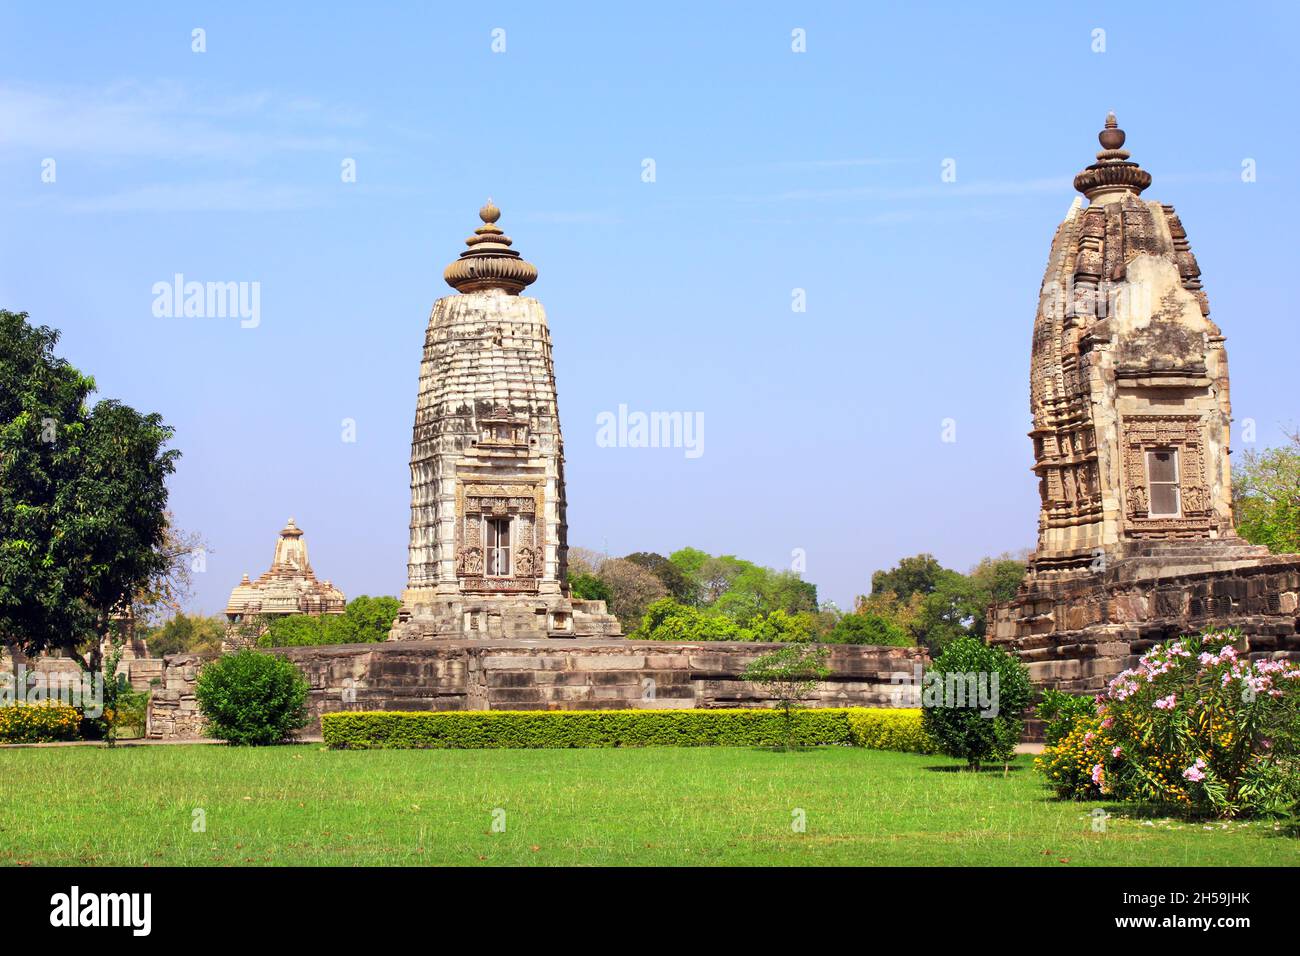 Anciens temples en pierre à Khajuraho, Madya Pradesh, Inde.Patrimoine mondial de l'UNESCO Banque D'Images